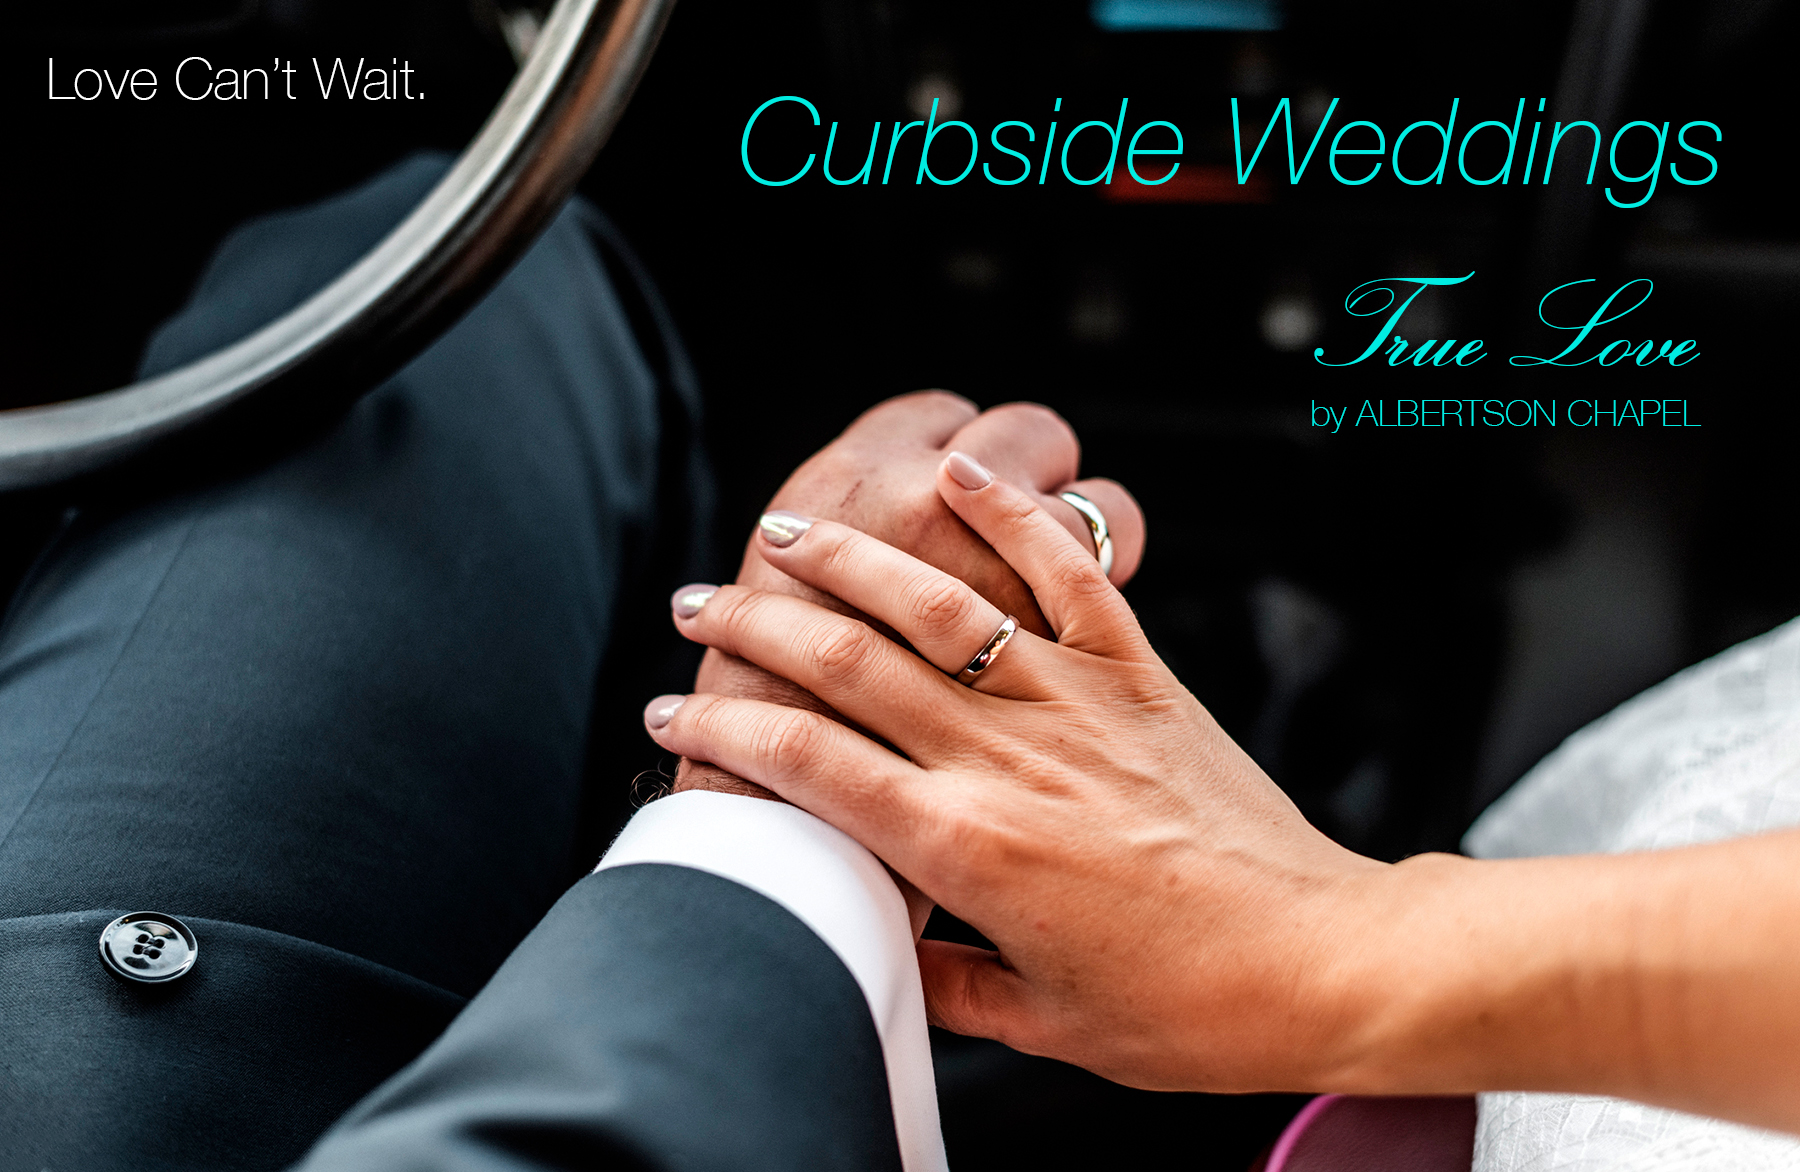 true love curbside weddings in los angeles 1